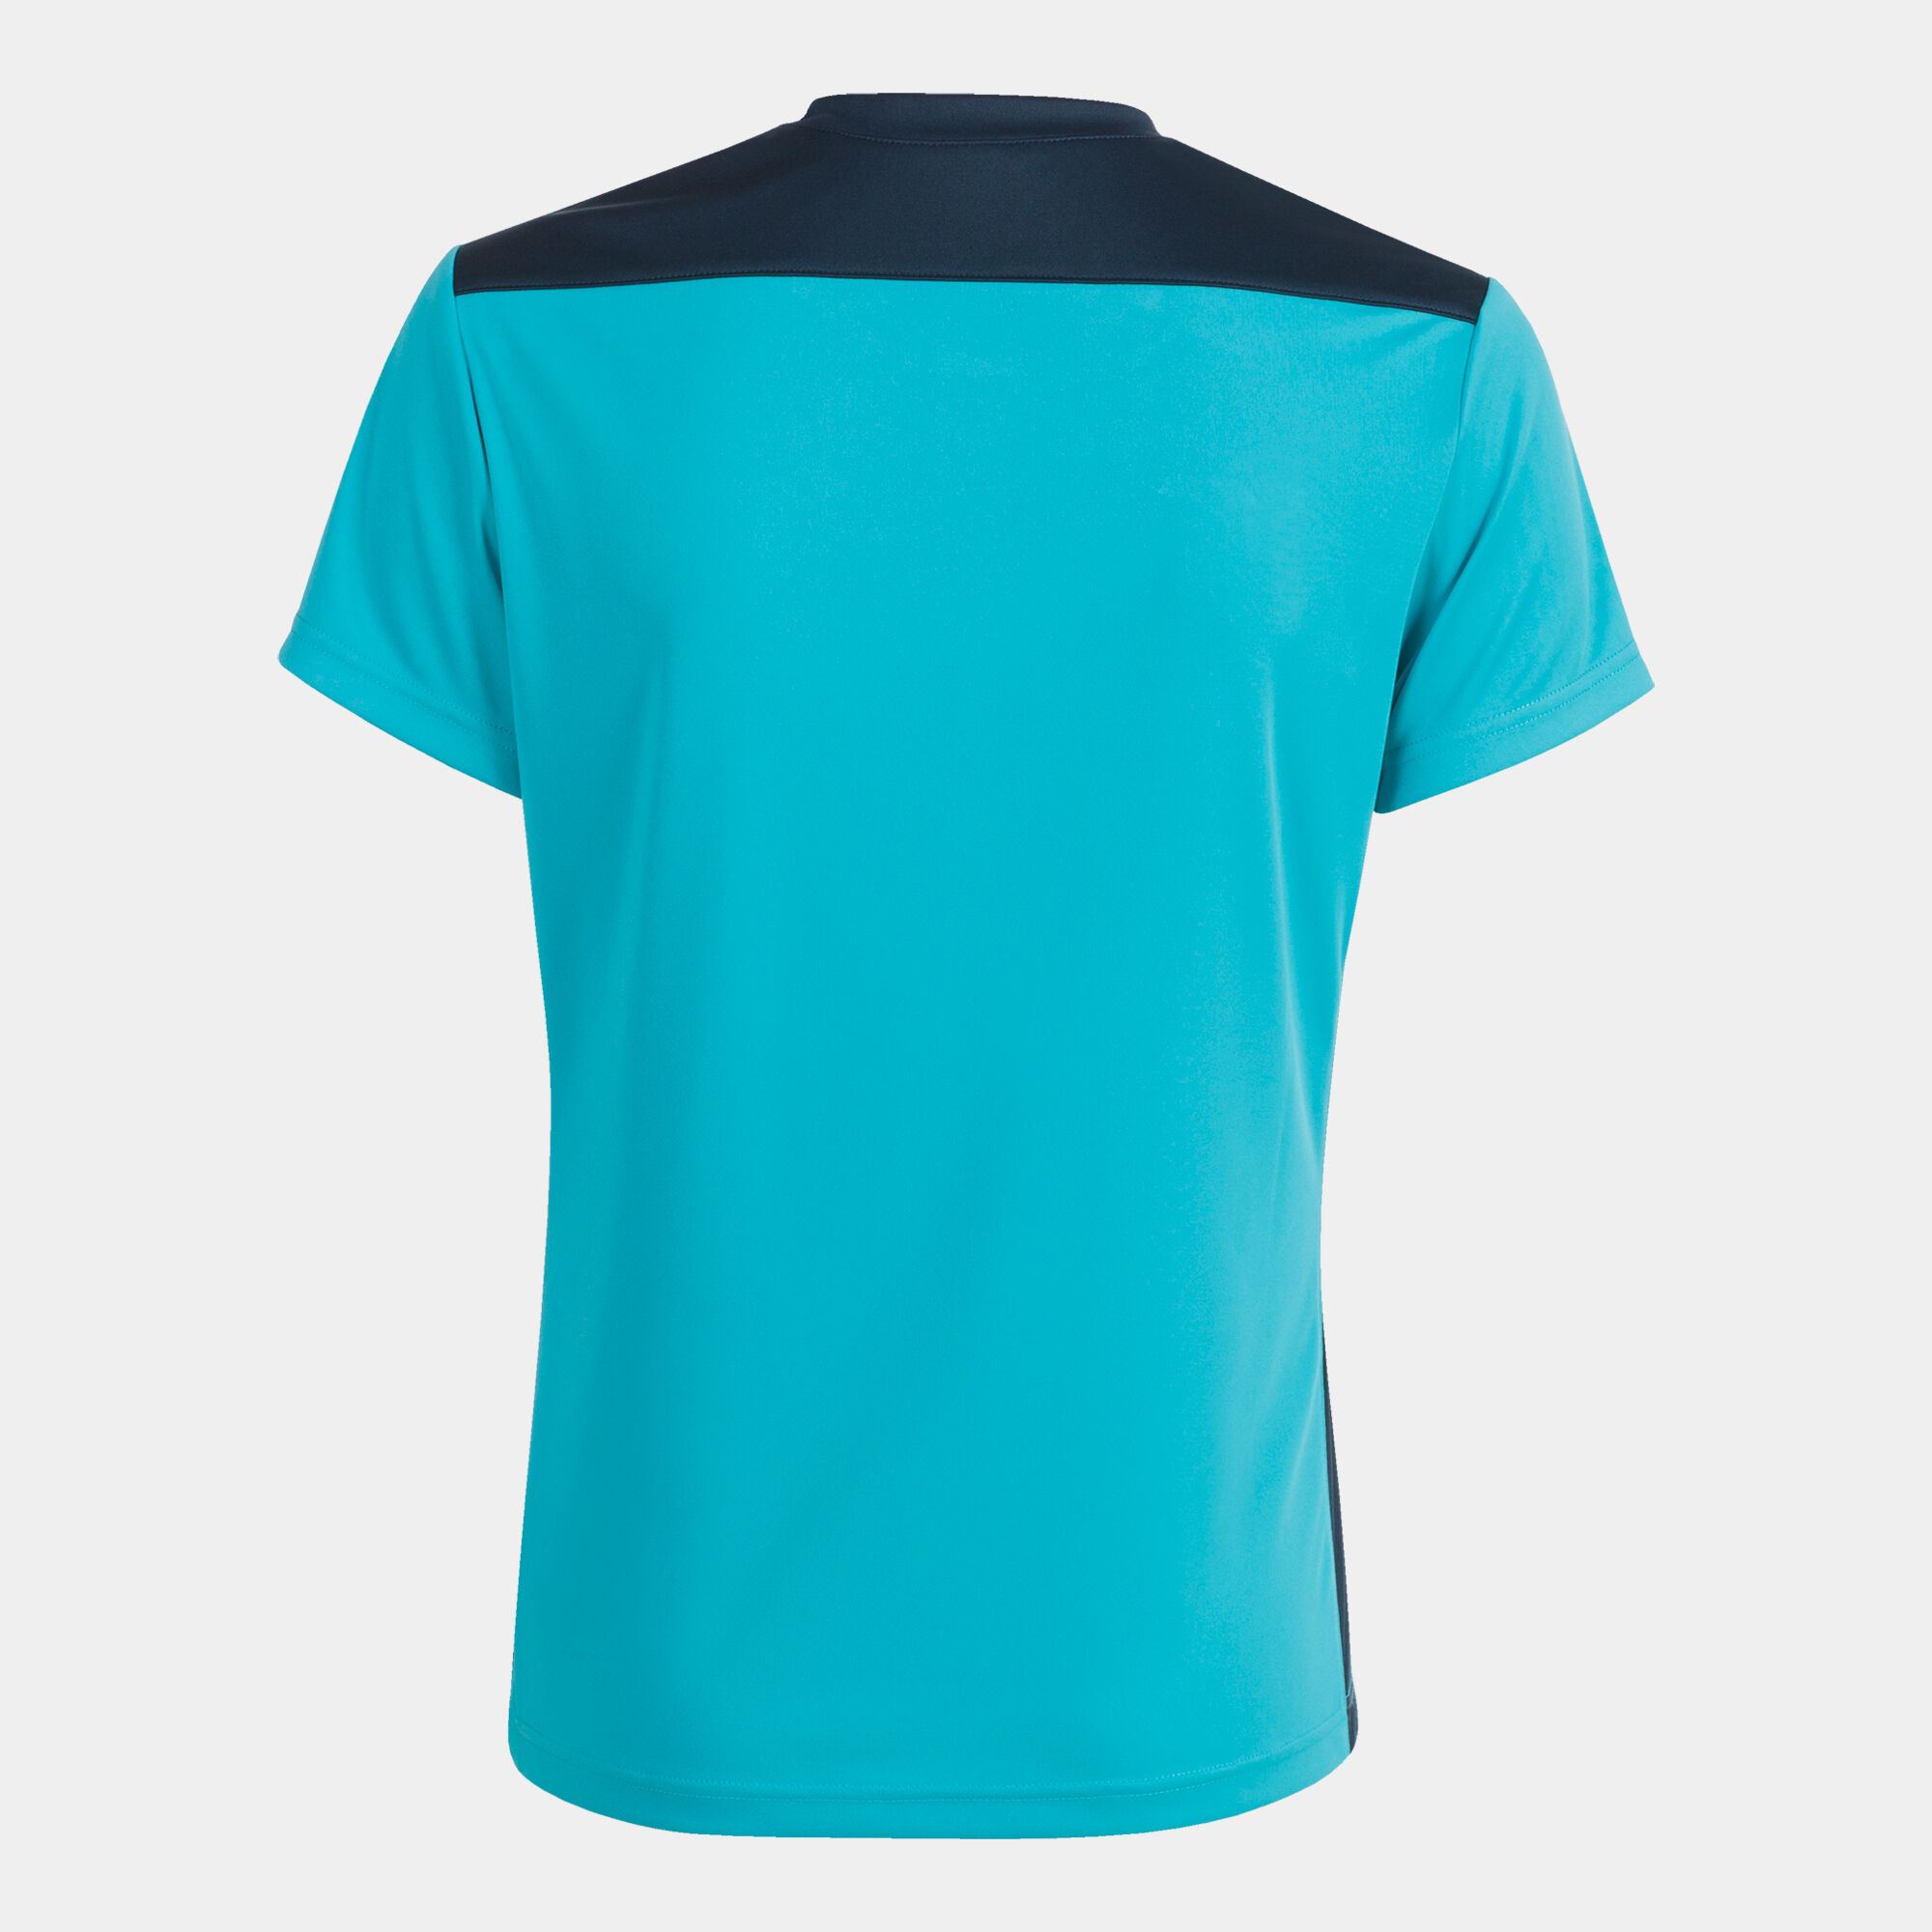 Camiseta manga corta mujer Championship VI turquesa flúor marino